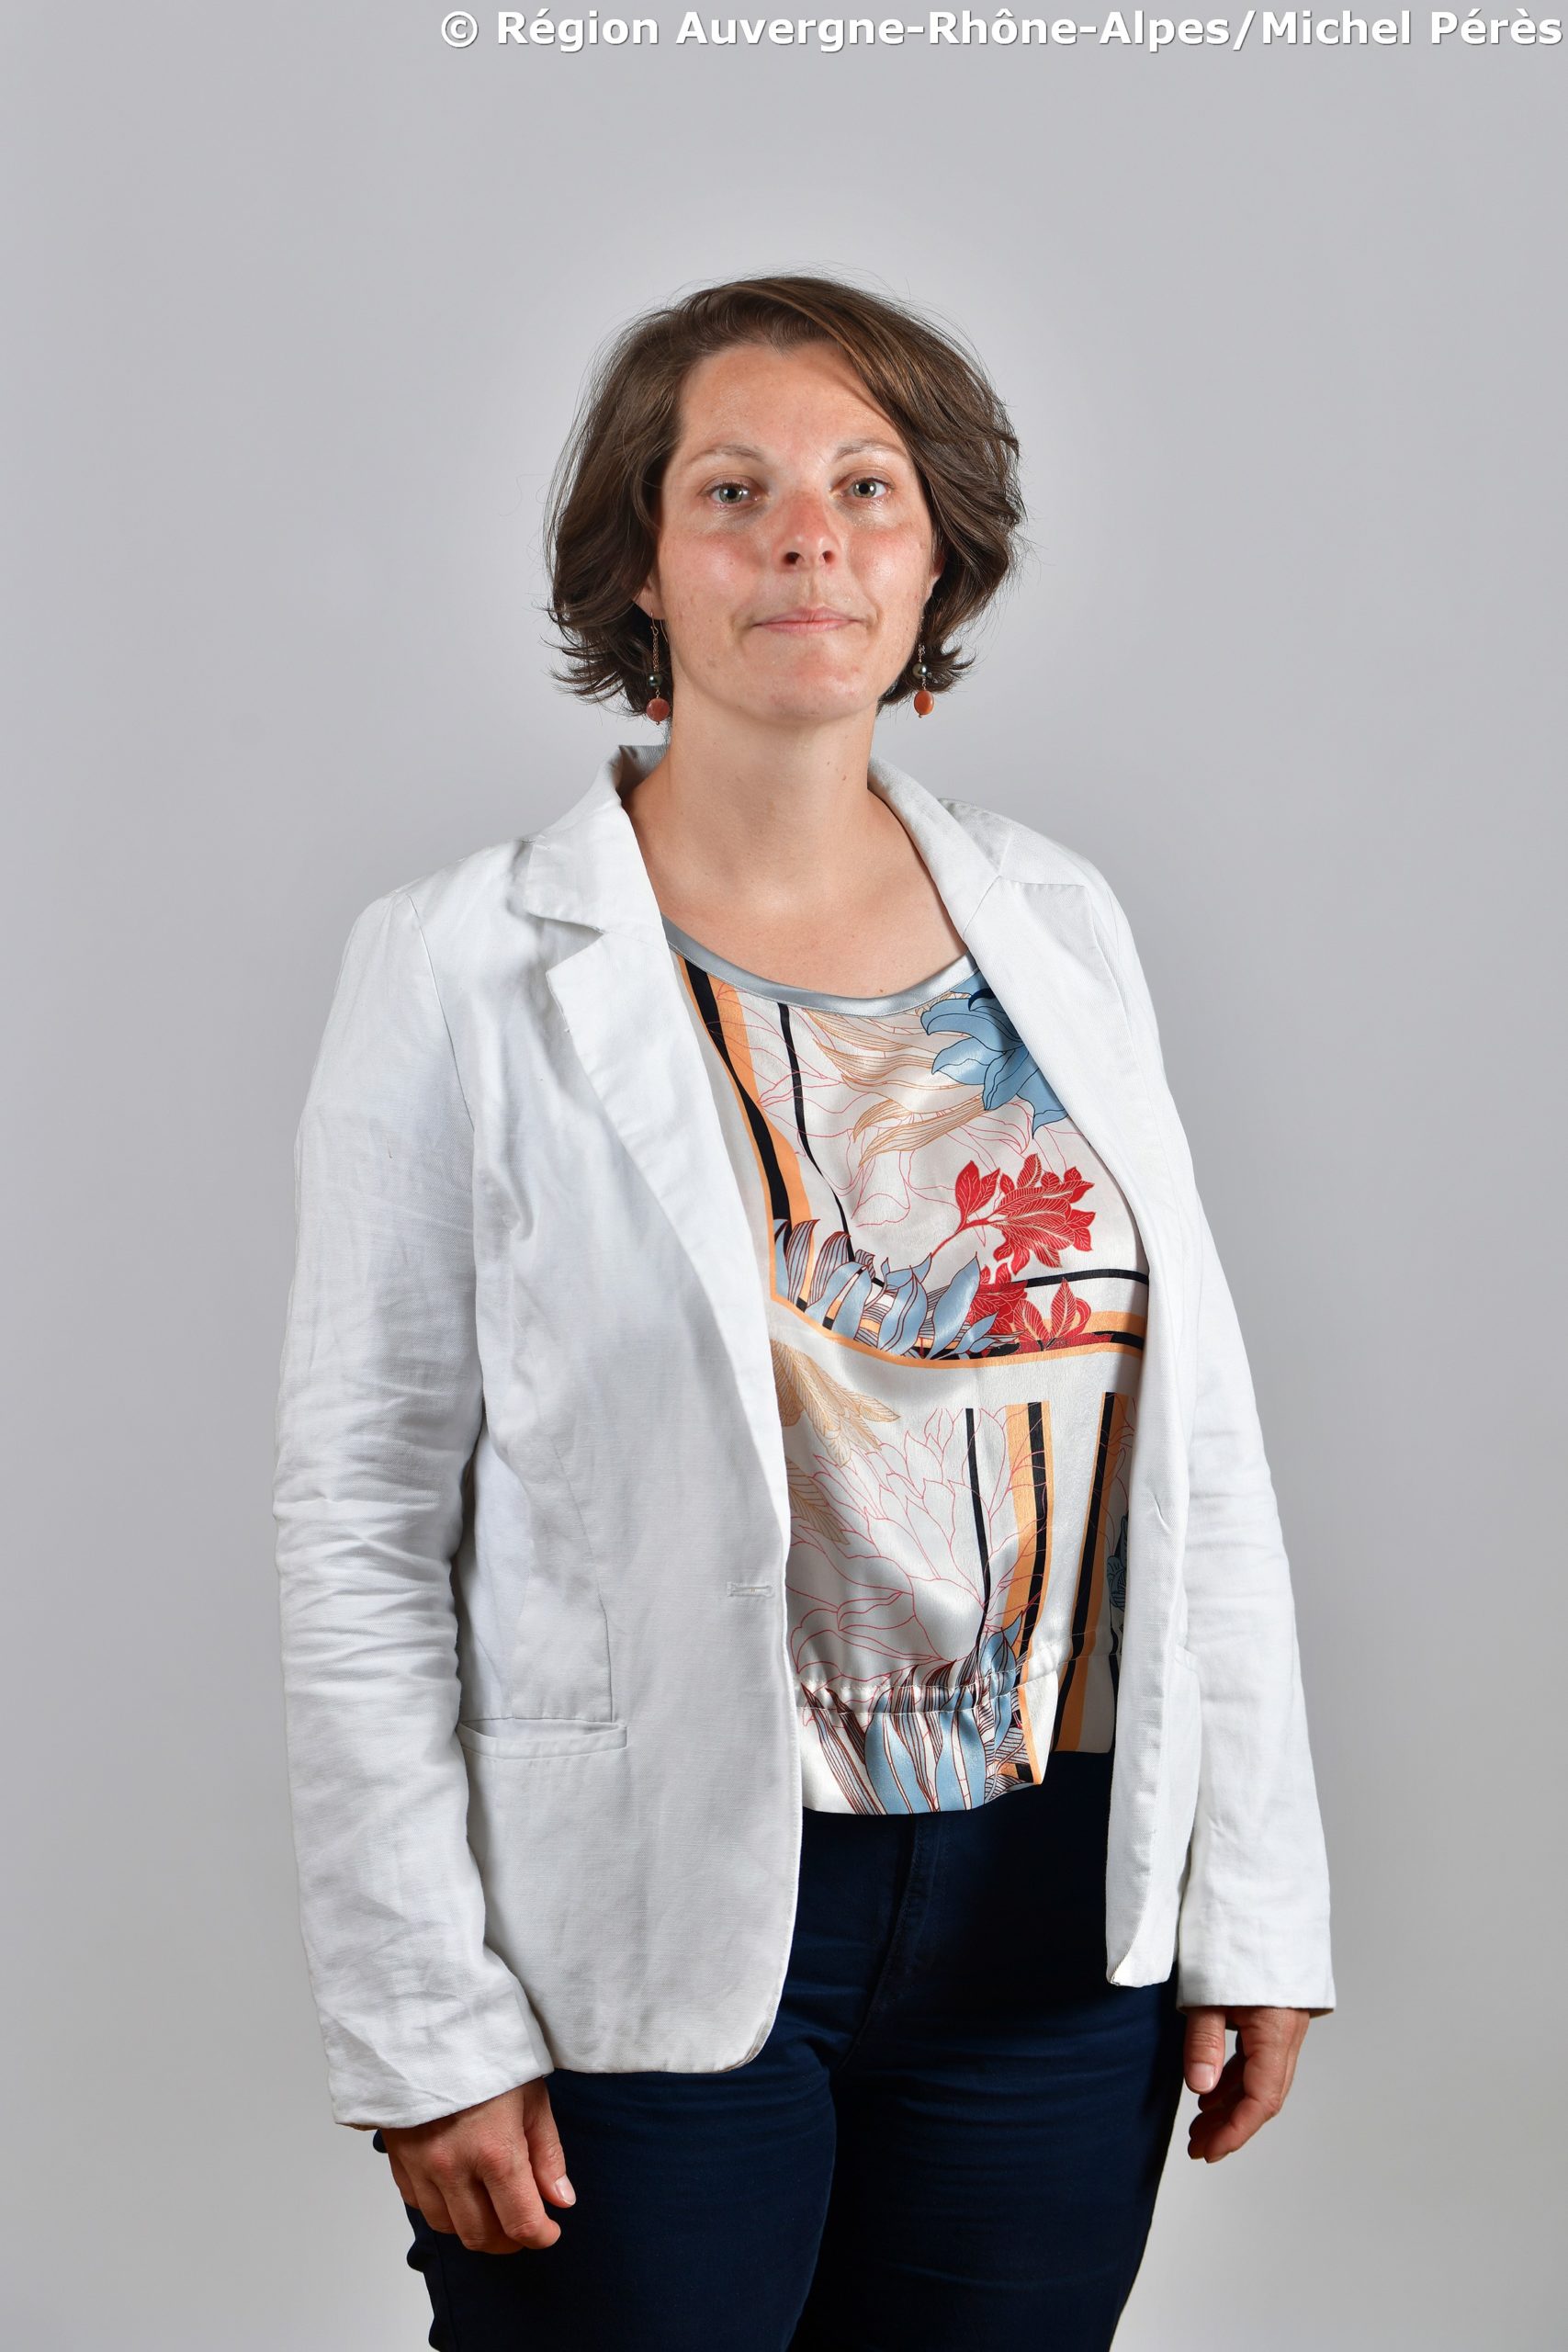 Cécile MICHEL, représentante de la Région Auvergne-Rhône-Alpes (photo Michel Pérès)